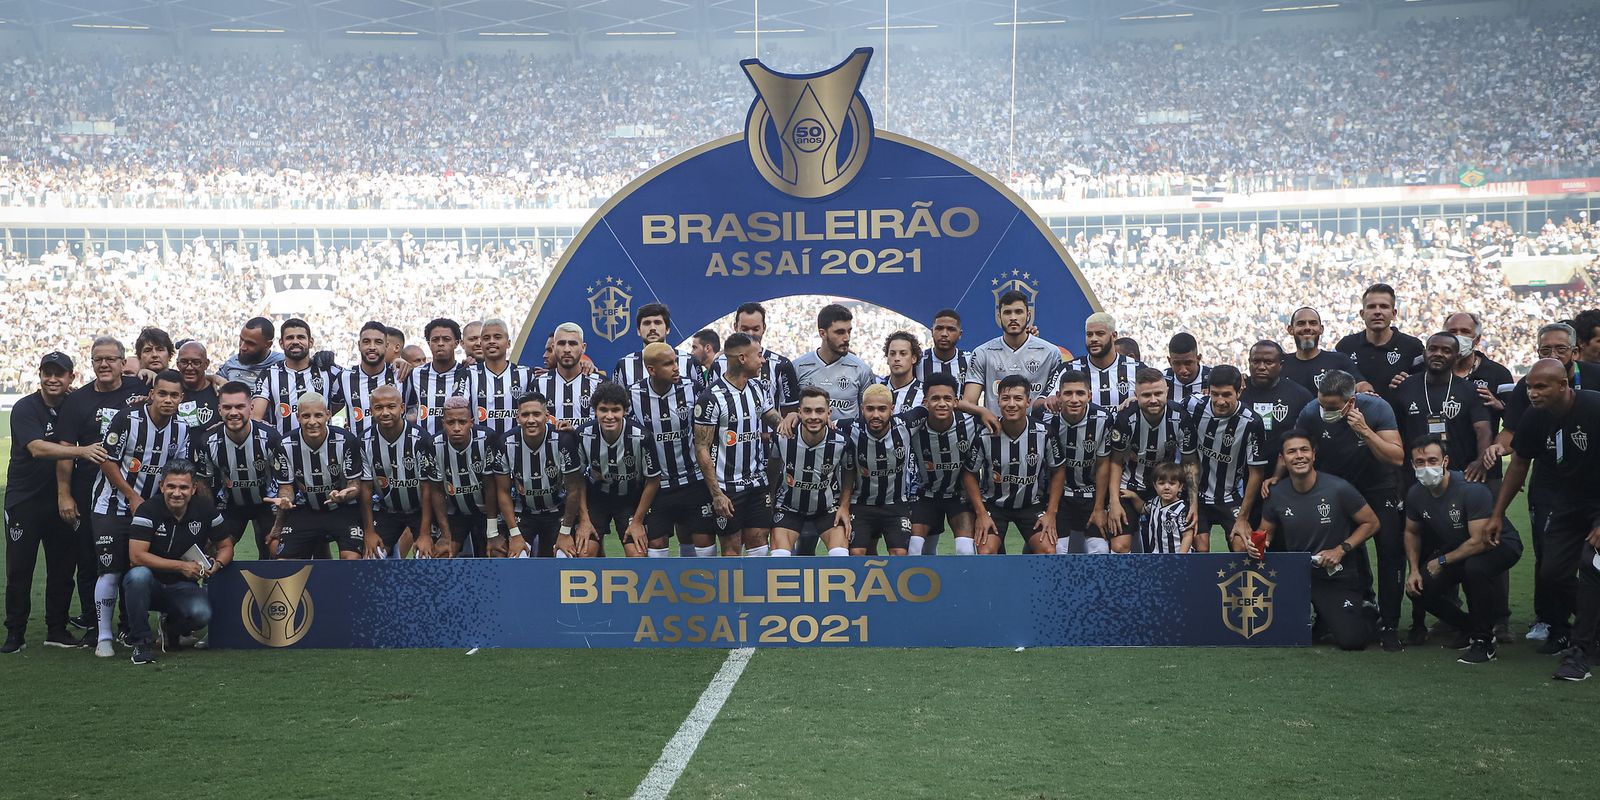 Gremio x Atletico-MG, FUTEBOL/CAMPEONATO BRASILEIRO 2021 /G…